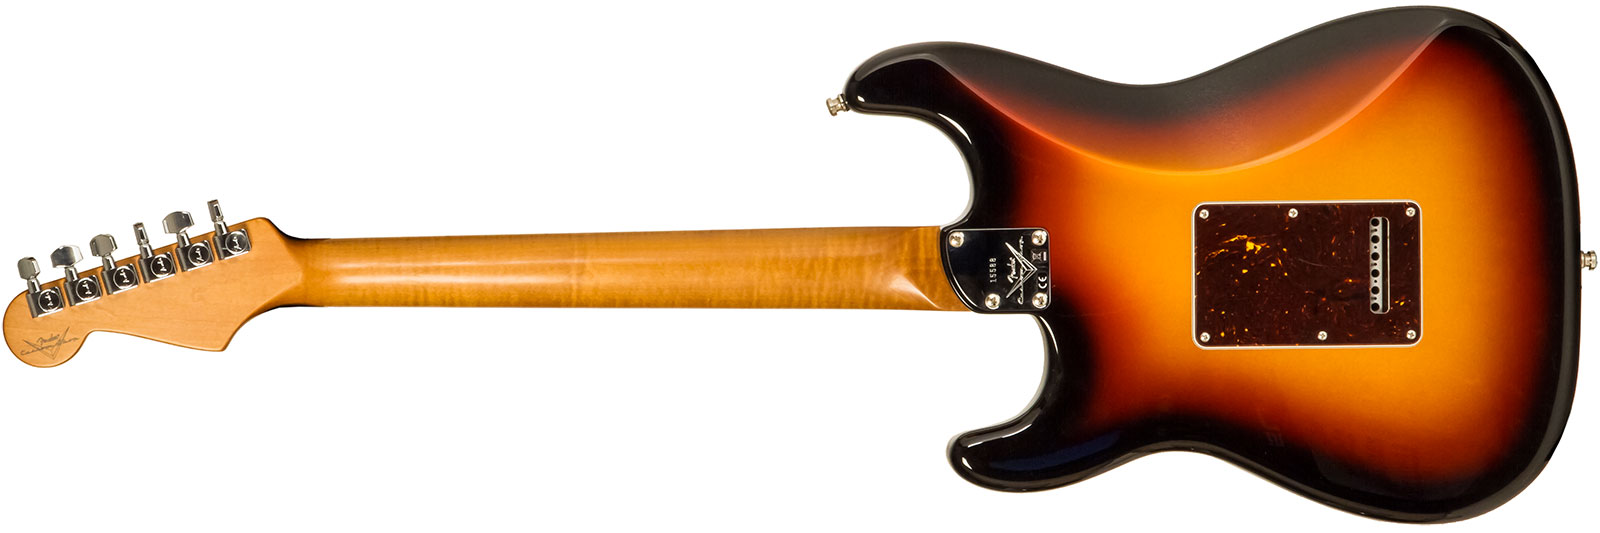 Fender Custom Shop Strat Elite 3s Trem Mn #xn15588 - Nos 3-color Sunburst - Elektrische gitaar in Str-vorm - Variation 1